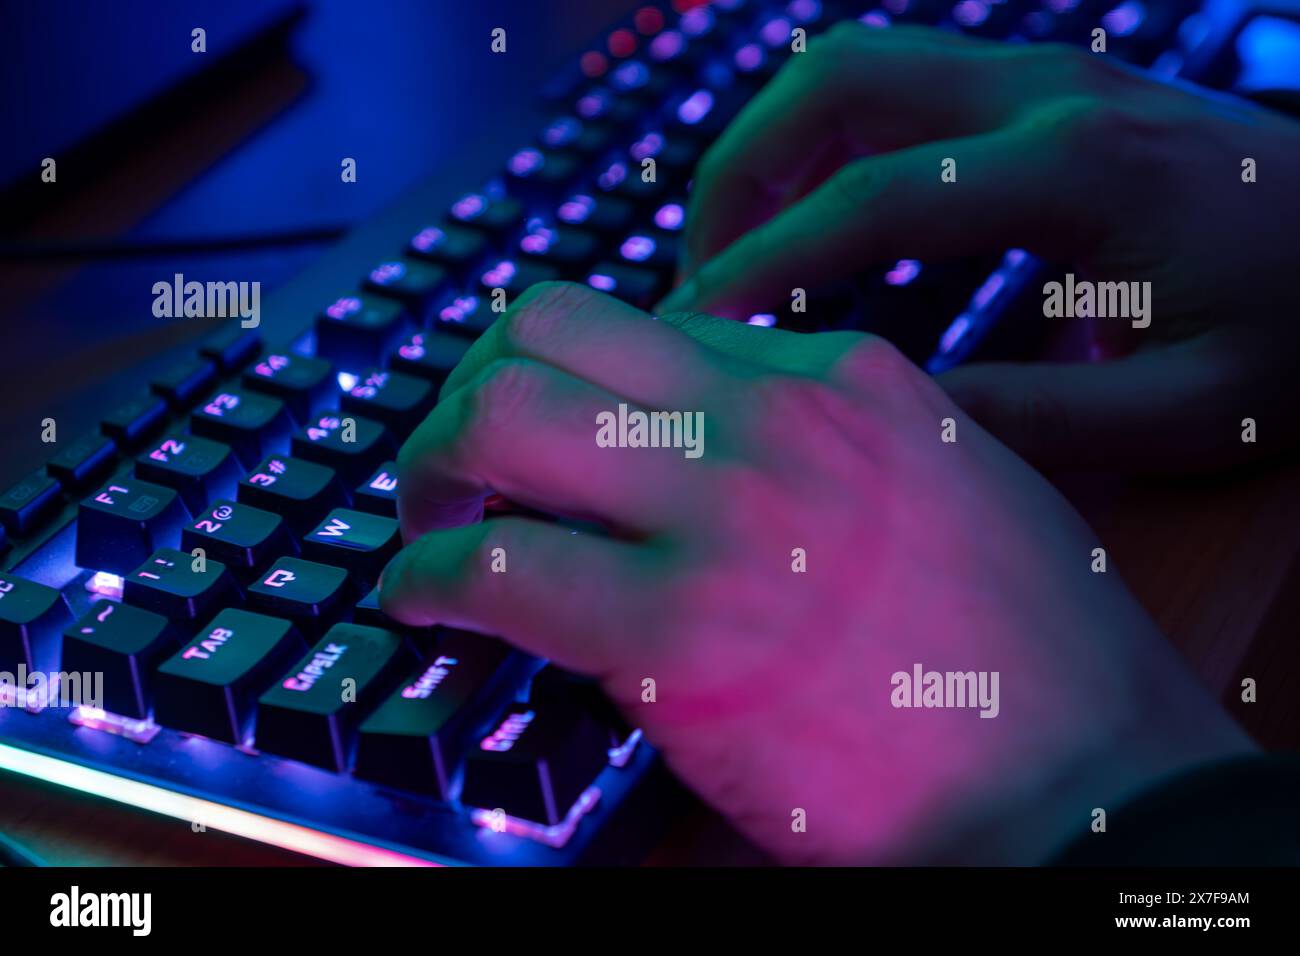 Close-up sul giocatore le mani su una tastiera, attivamente premendo pulsanti, giocando MMO giochi online. Lo sfondo è illuminato con luci al neon. Foto Stock